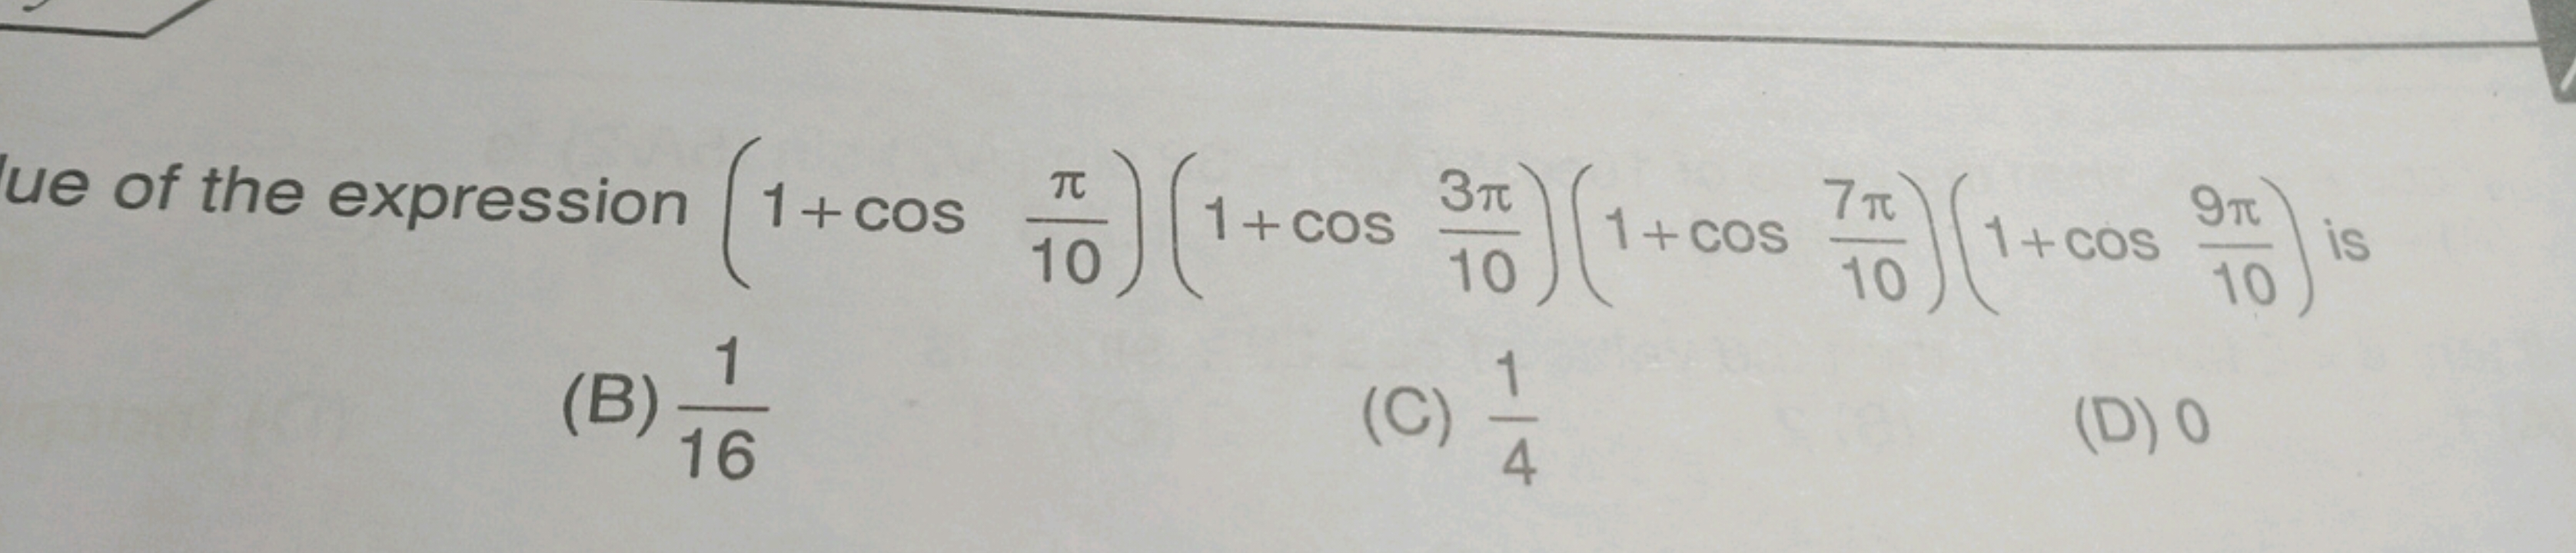 Ue of the expression (1+cos10π​)(1+cos103π​)(1+cos107π​)(1+cos109π​) i